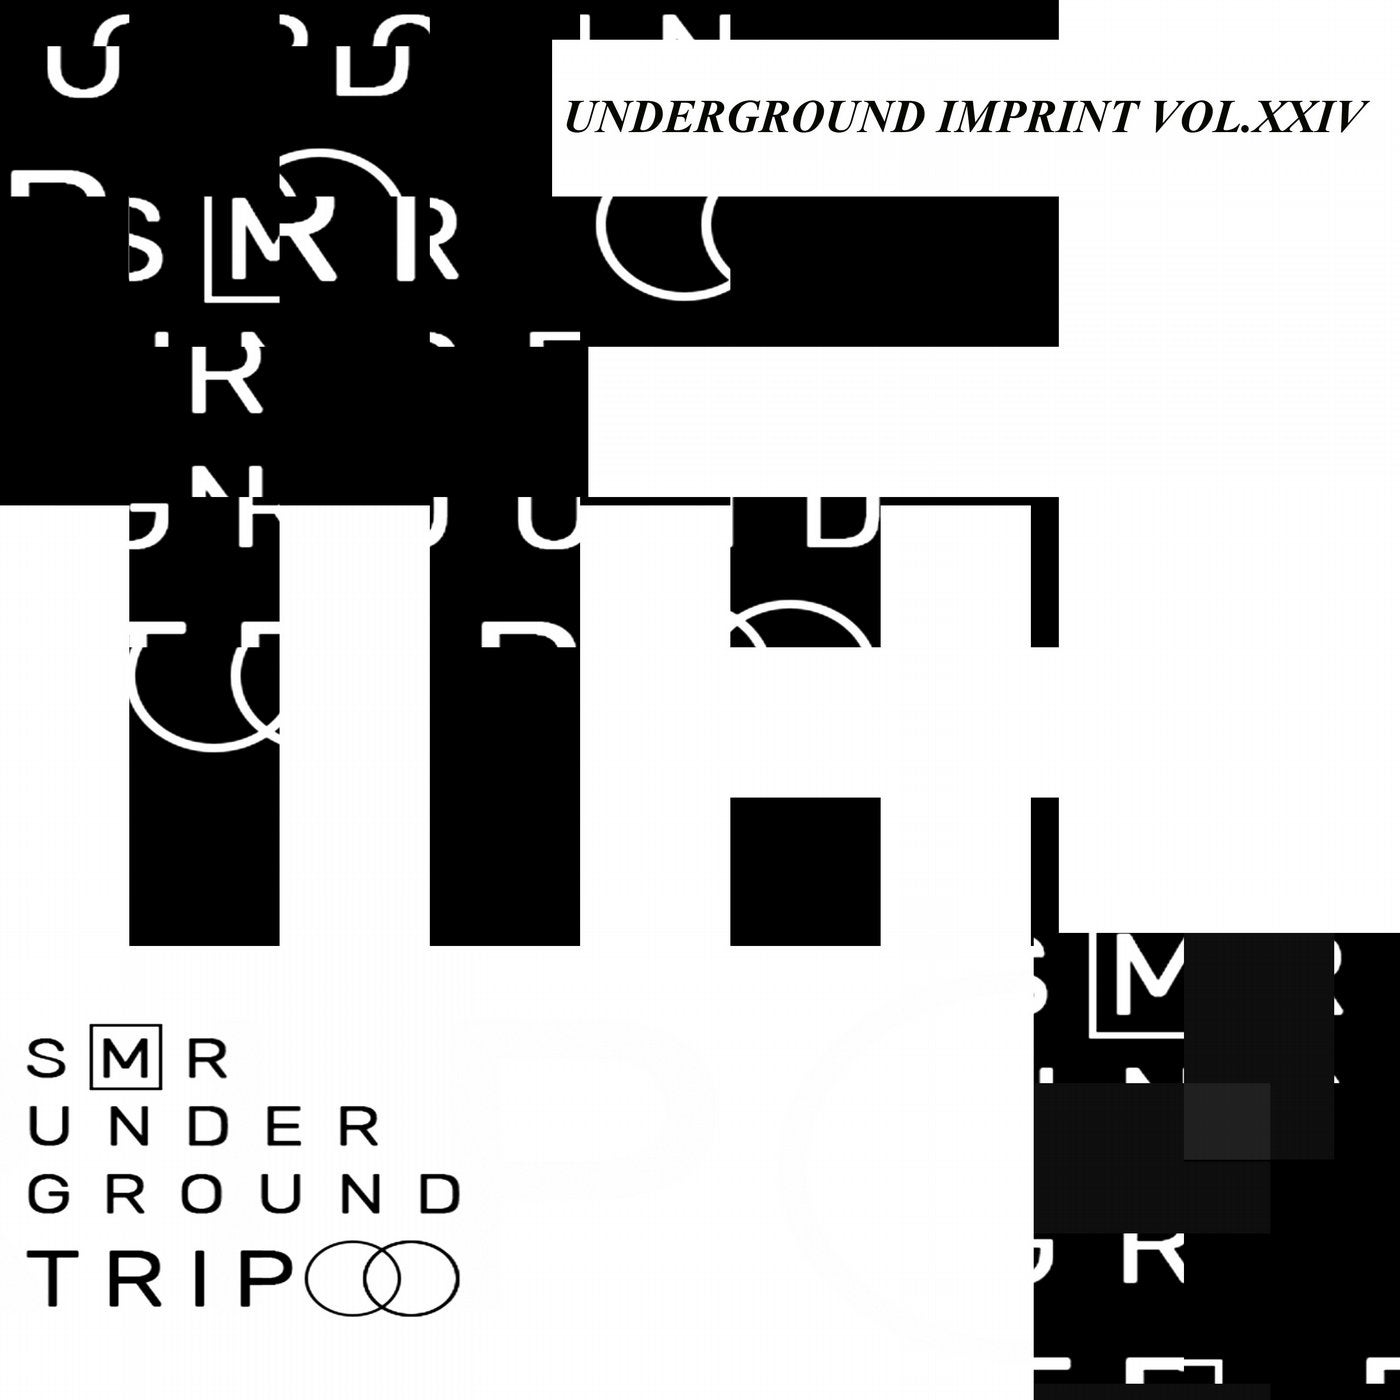 UndergrounD TriP Vol.XXIV